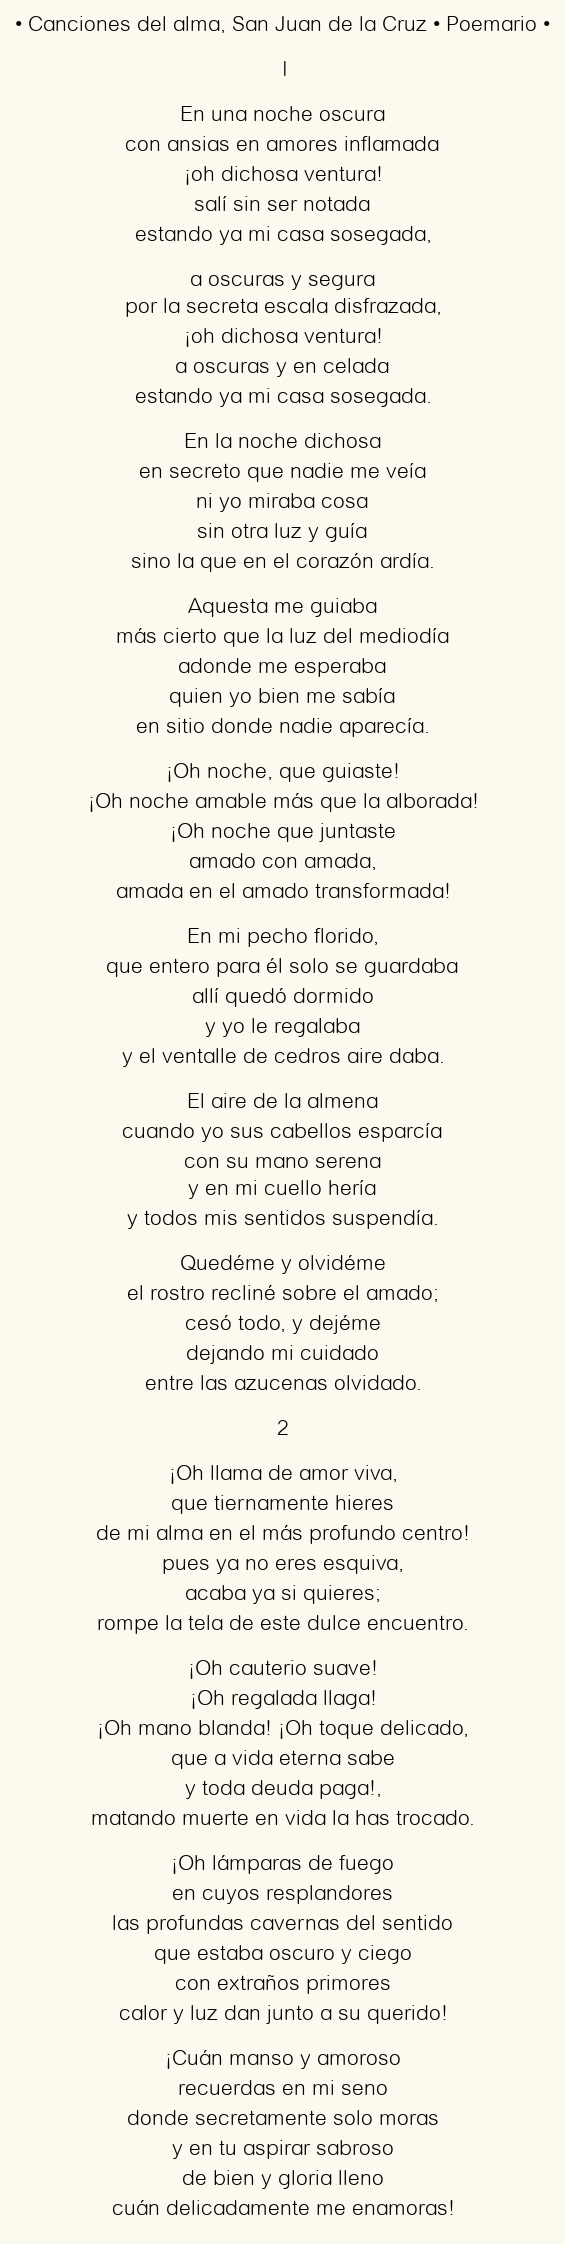 Imagen con el poema Canciones del alma, por San Juan de la Cruz